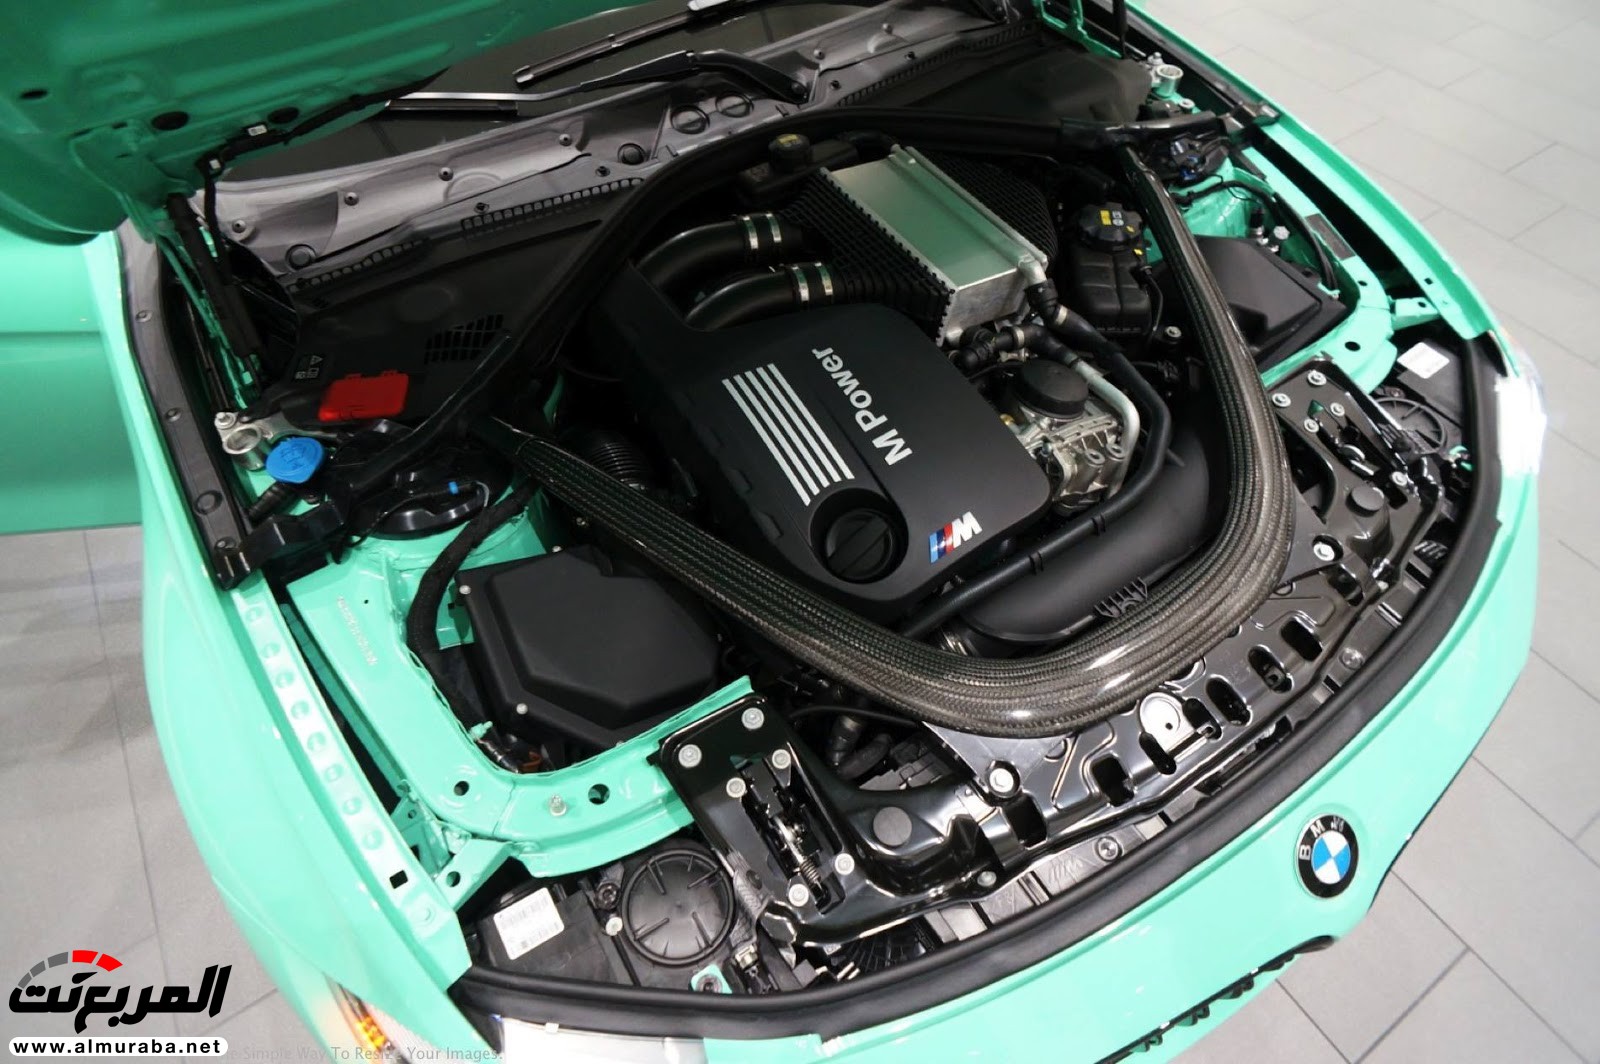 "بالصور" شاهد "بي إم دبليو" F80 M3 الخاصة بطلاء النعناع الأخضر BMW 119